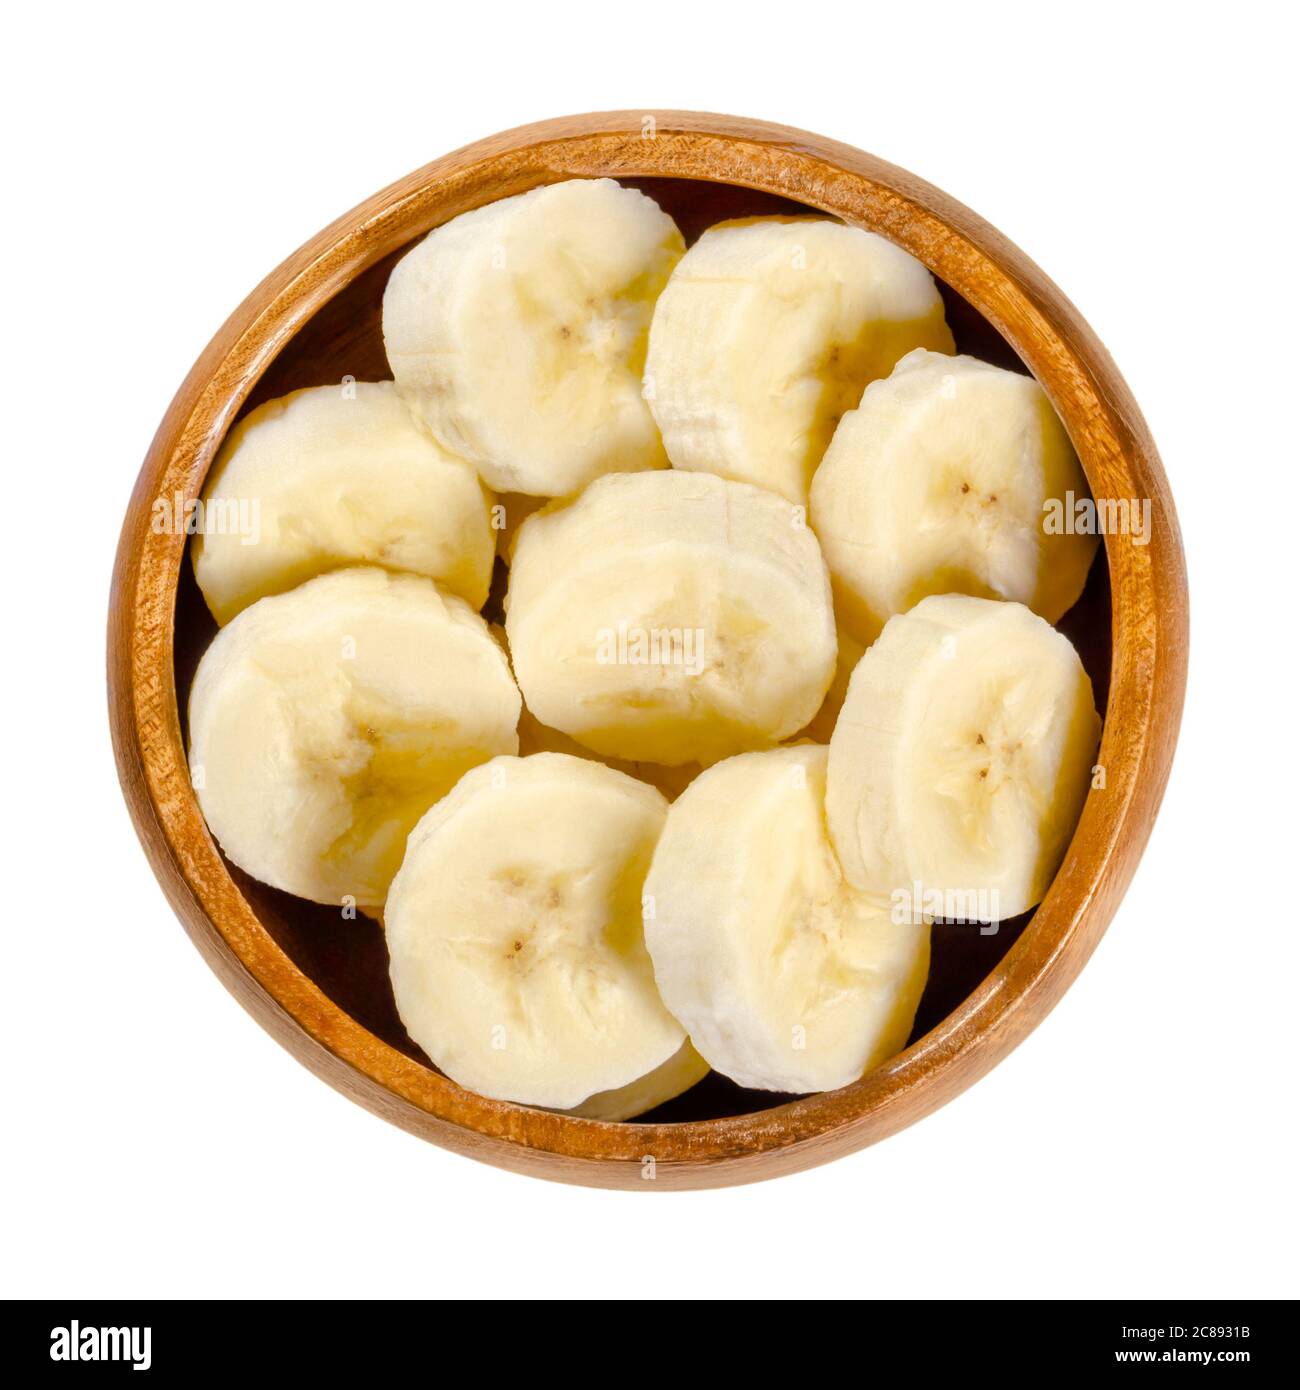 Fette di banana fresche in ciotola di legno. Banana matura e sbucciata tagliata a pezzi rotondi. Frutta da dessert commestibile e pronta a mangiare di colore giallo. Foto Stock